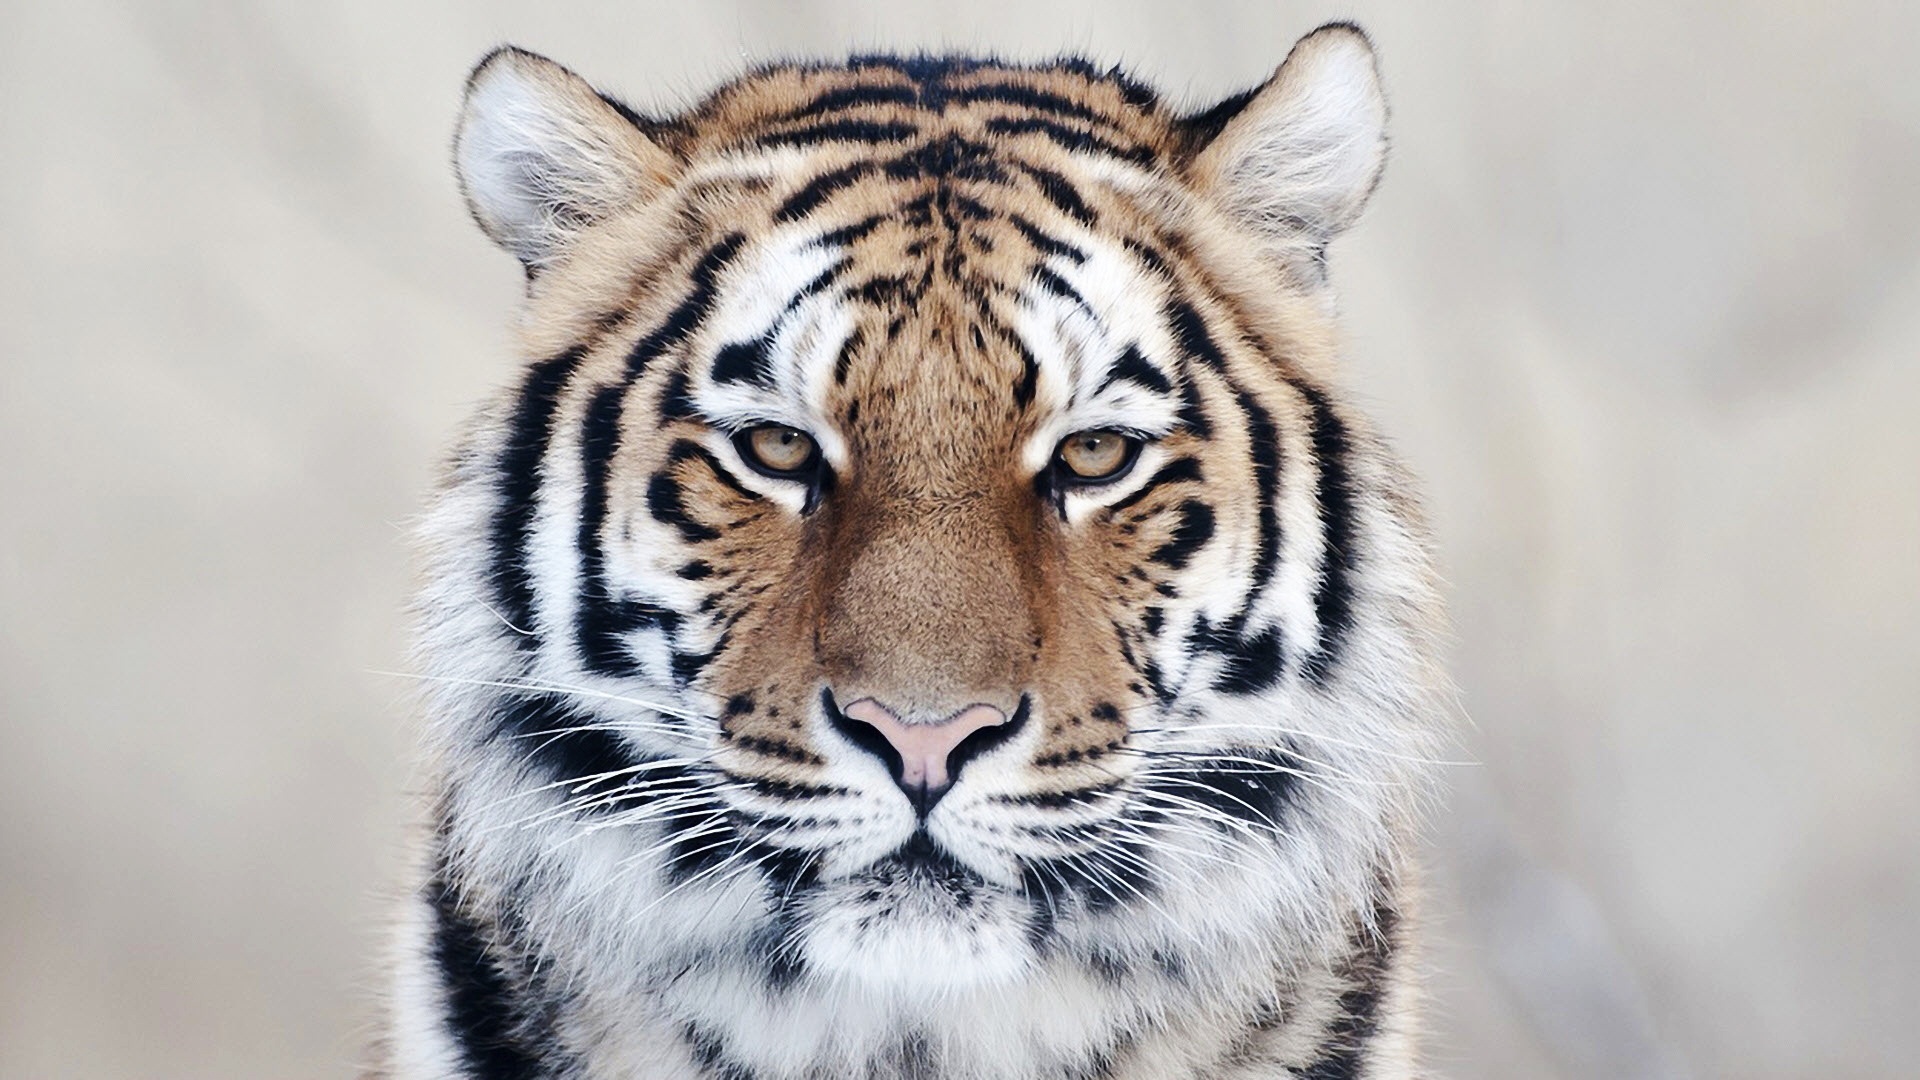 高清晰猫科动物壁纸-老虎-狮子-豹子